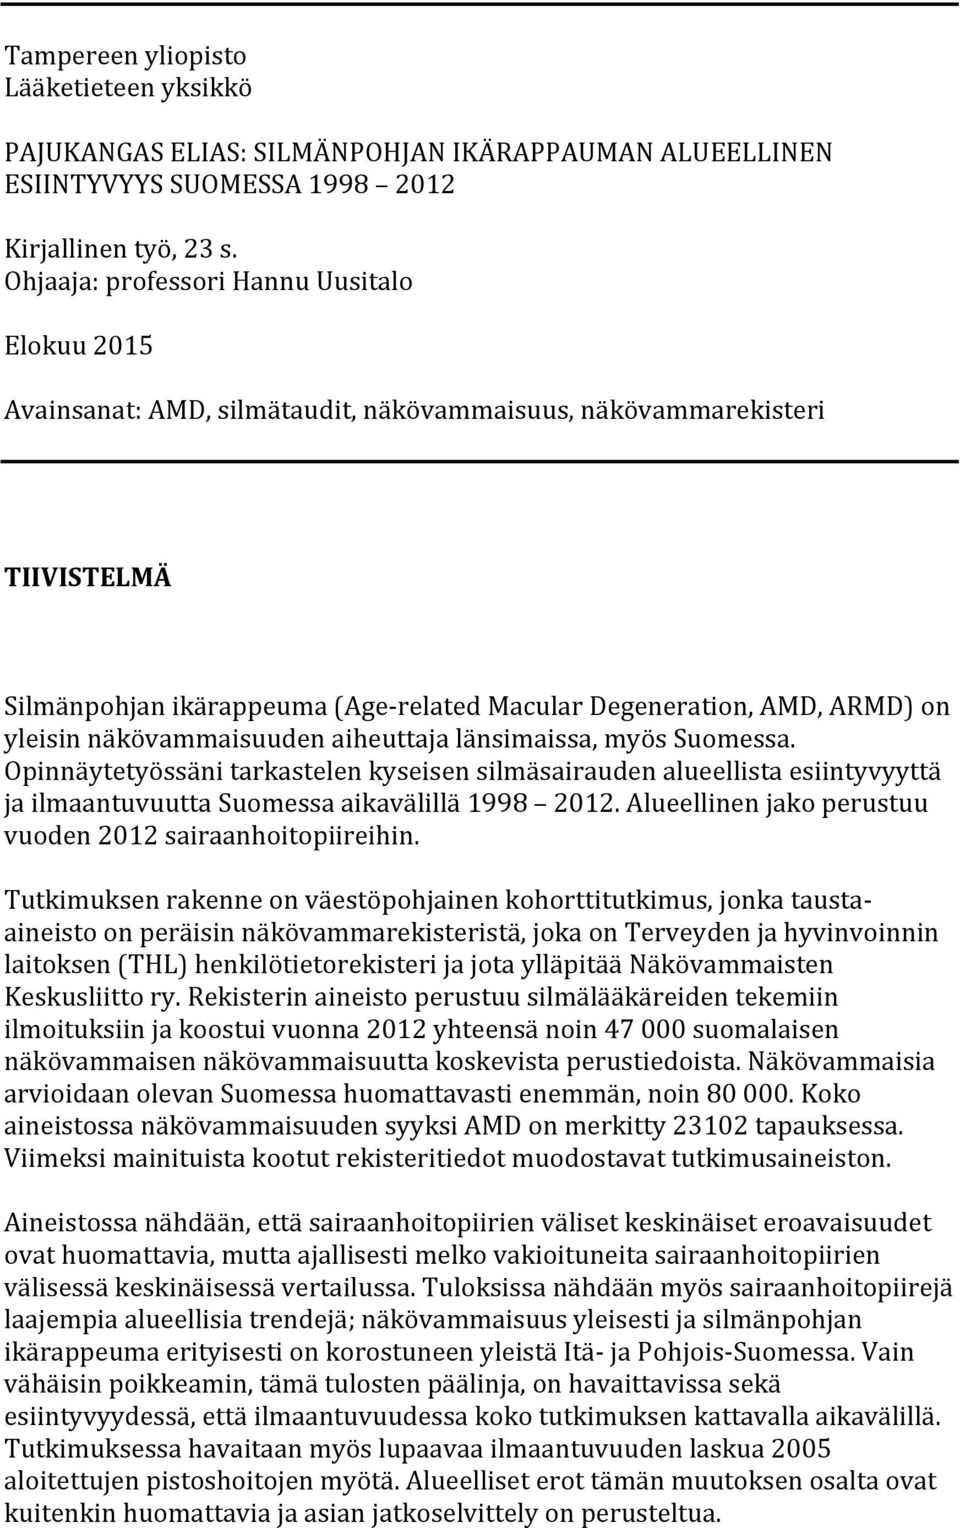 yleisinnäkövammaisuudenaiheuttajalänsimaissamyössuomessa. Opinnäytetyössänitarkastelenkyseisensilmäsairaudenalueellistaesiintyvyyttä jailmaantuvuuttasuomessaaikavälillä1998 2012.